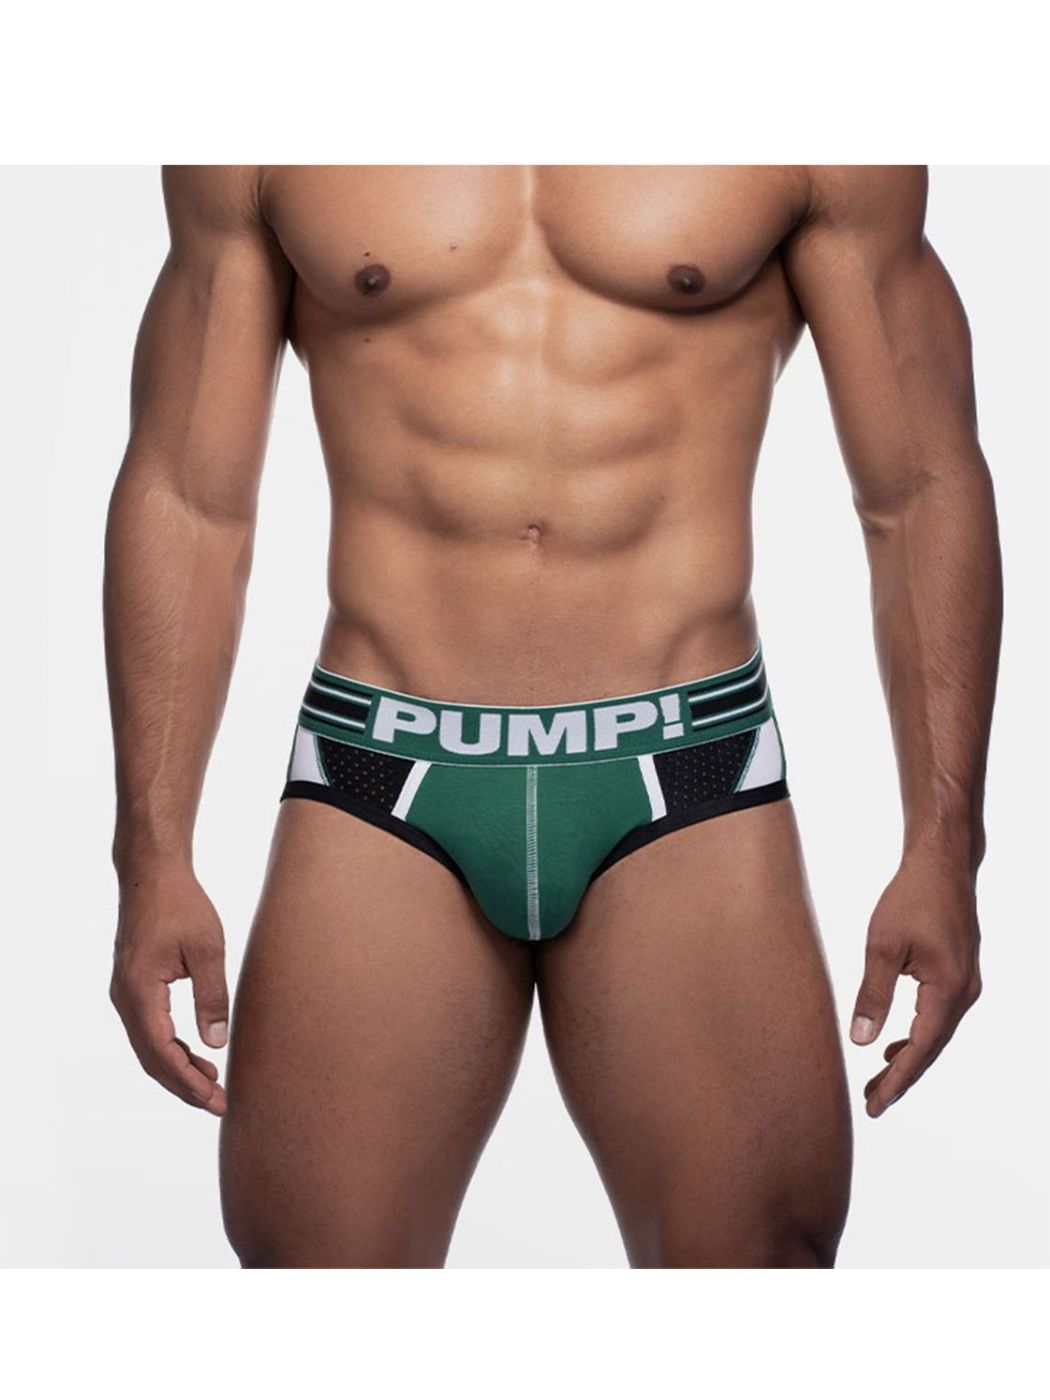 PUMP! Boost Sportboy Brief | Green/White/Black